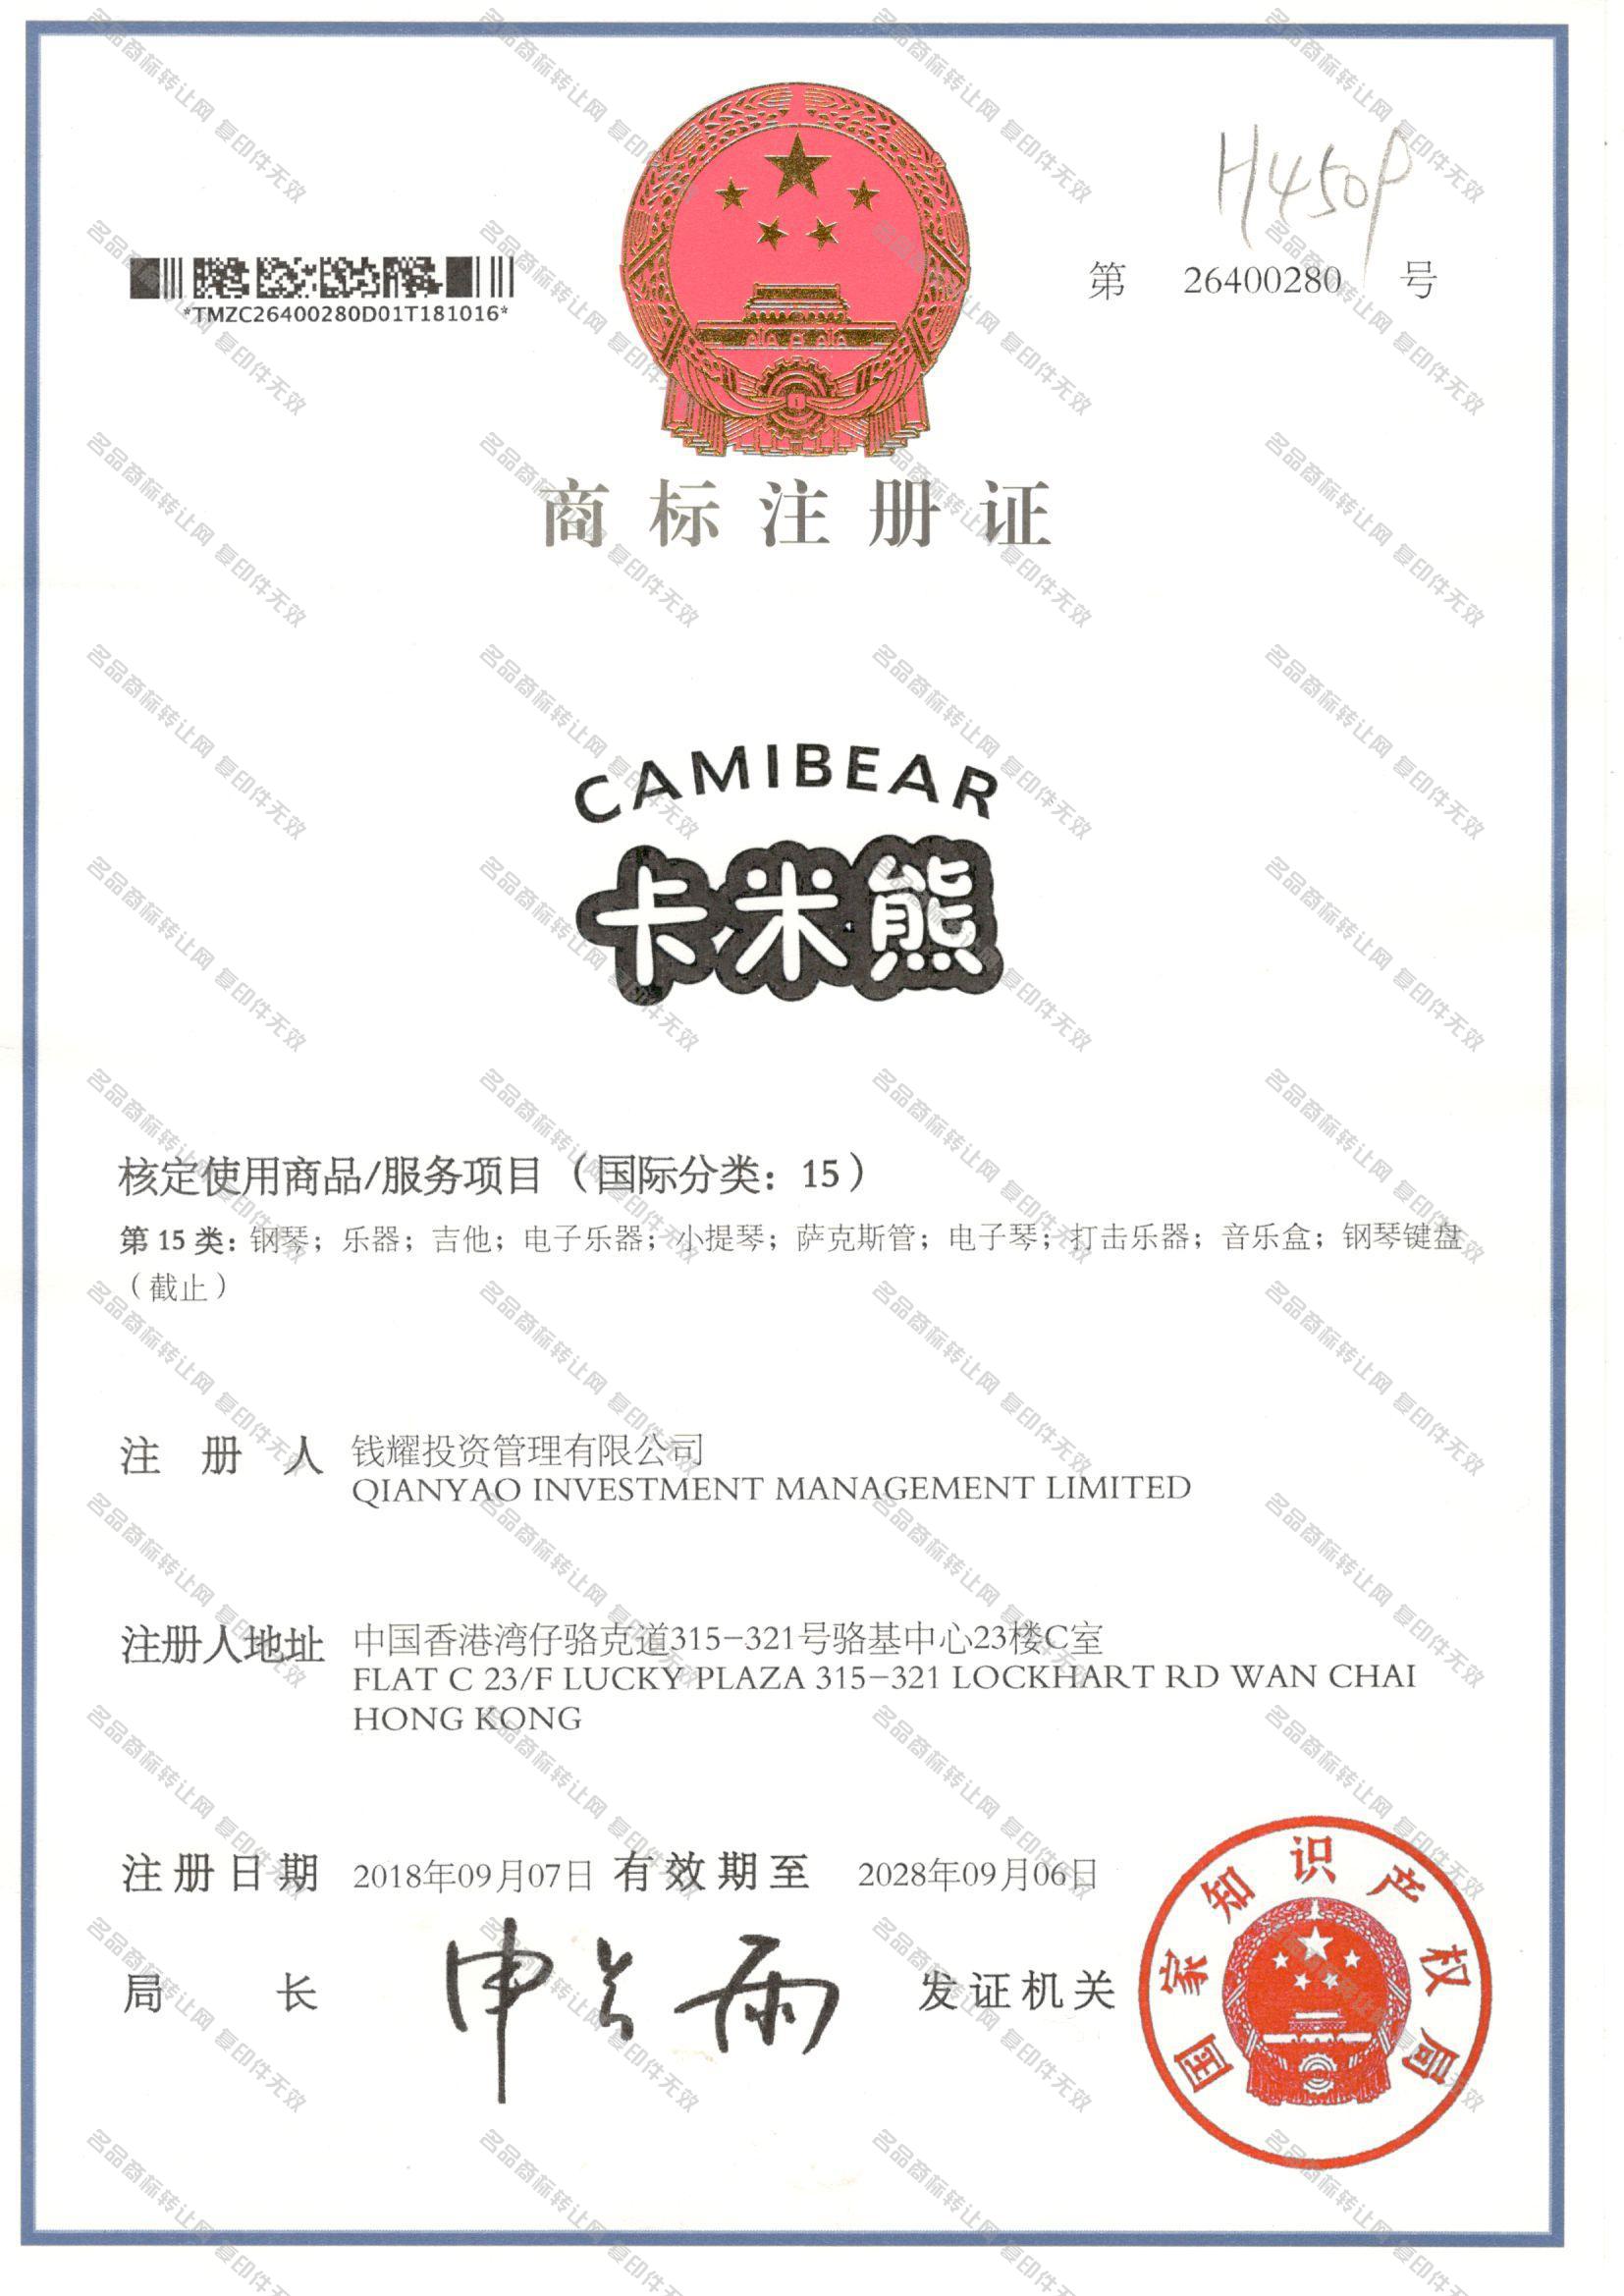 卡米熊 CAMIBEAR注册证